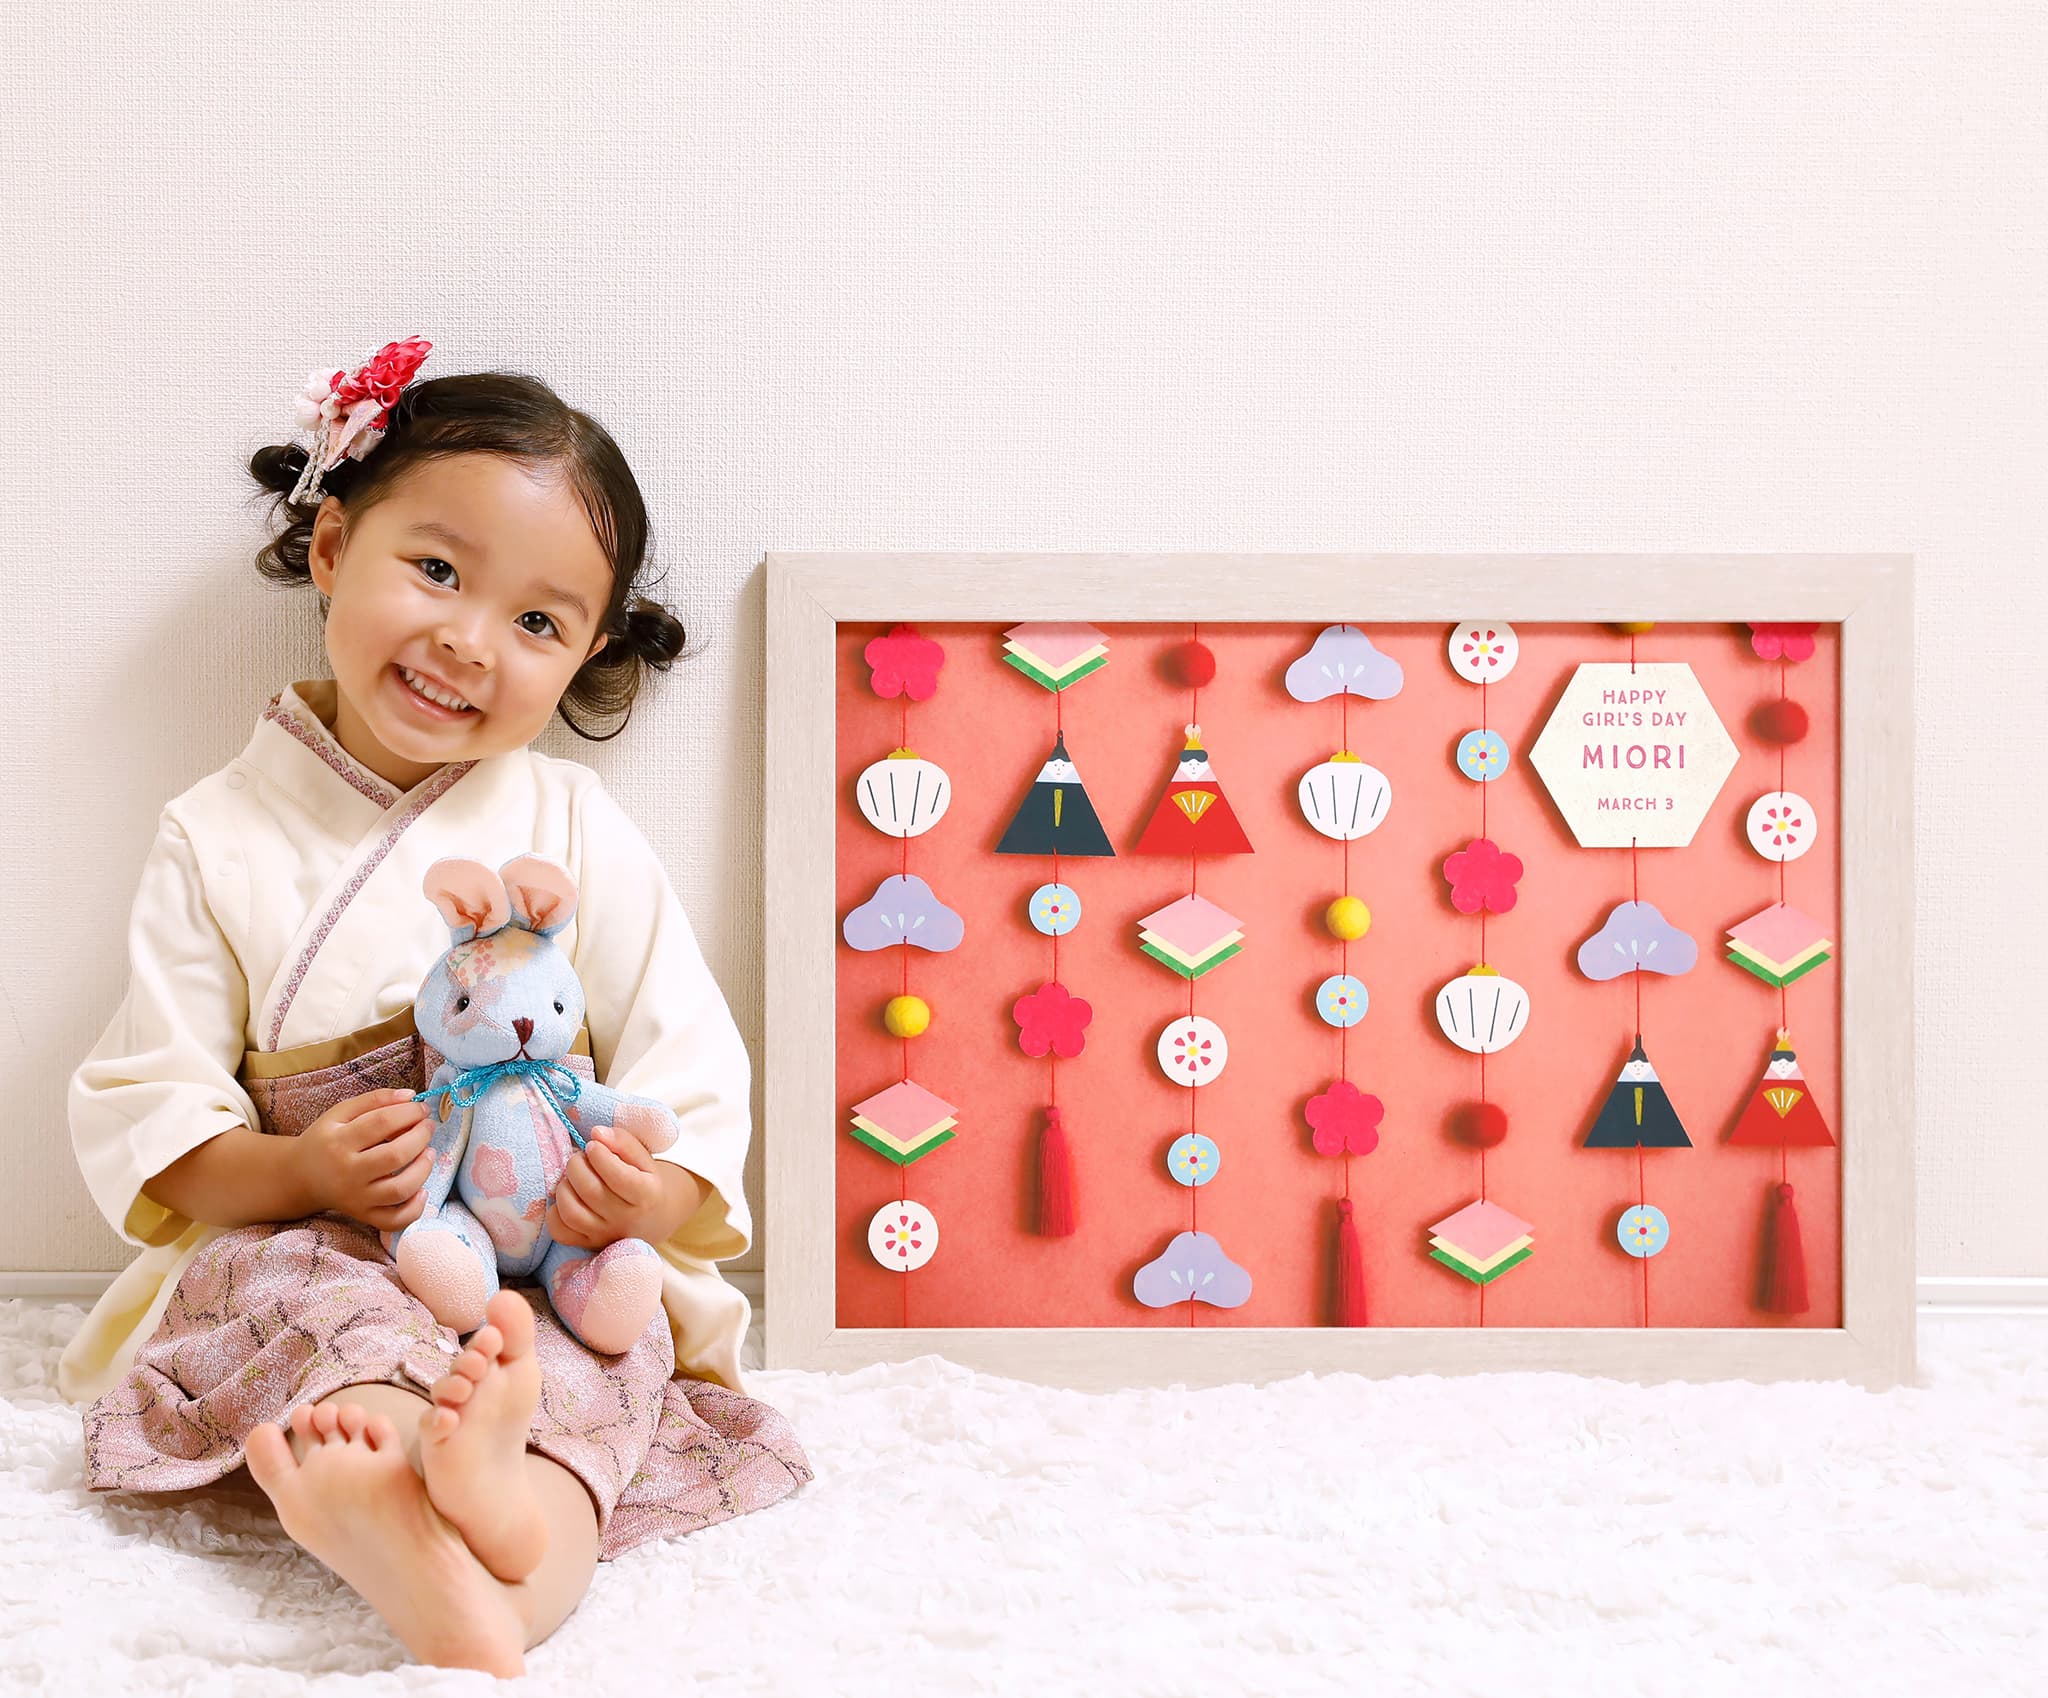 ー発売以来「毎年完売！」の人気商品
「おしゃれな雛人形のデザインポスター」で新しいひな祭りの楽しみ方を